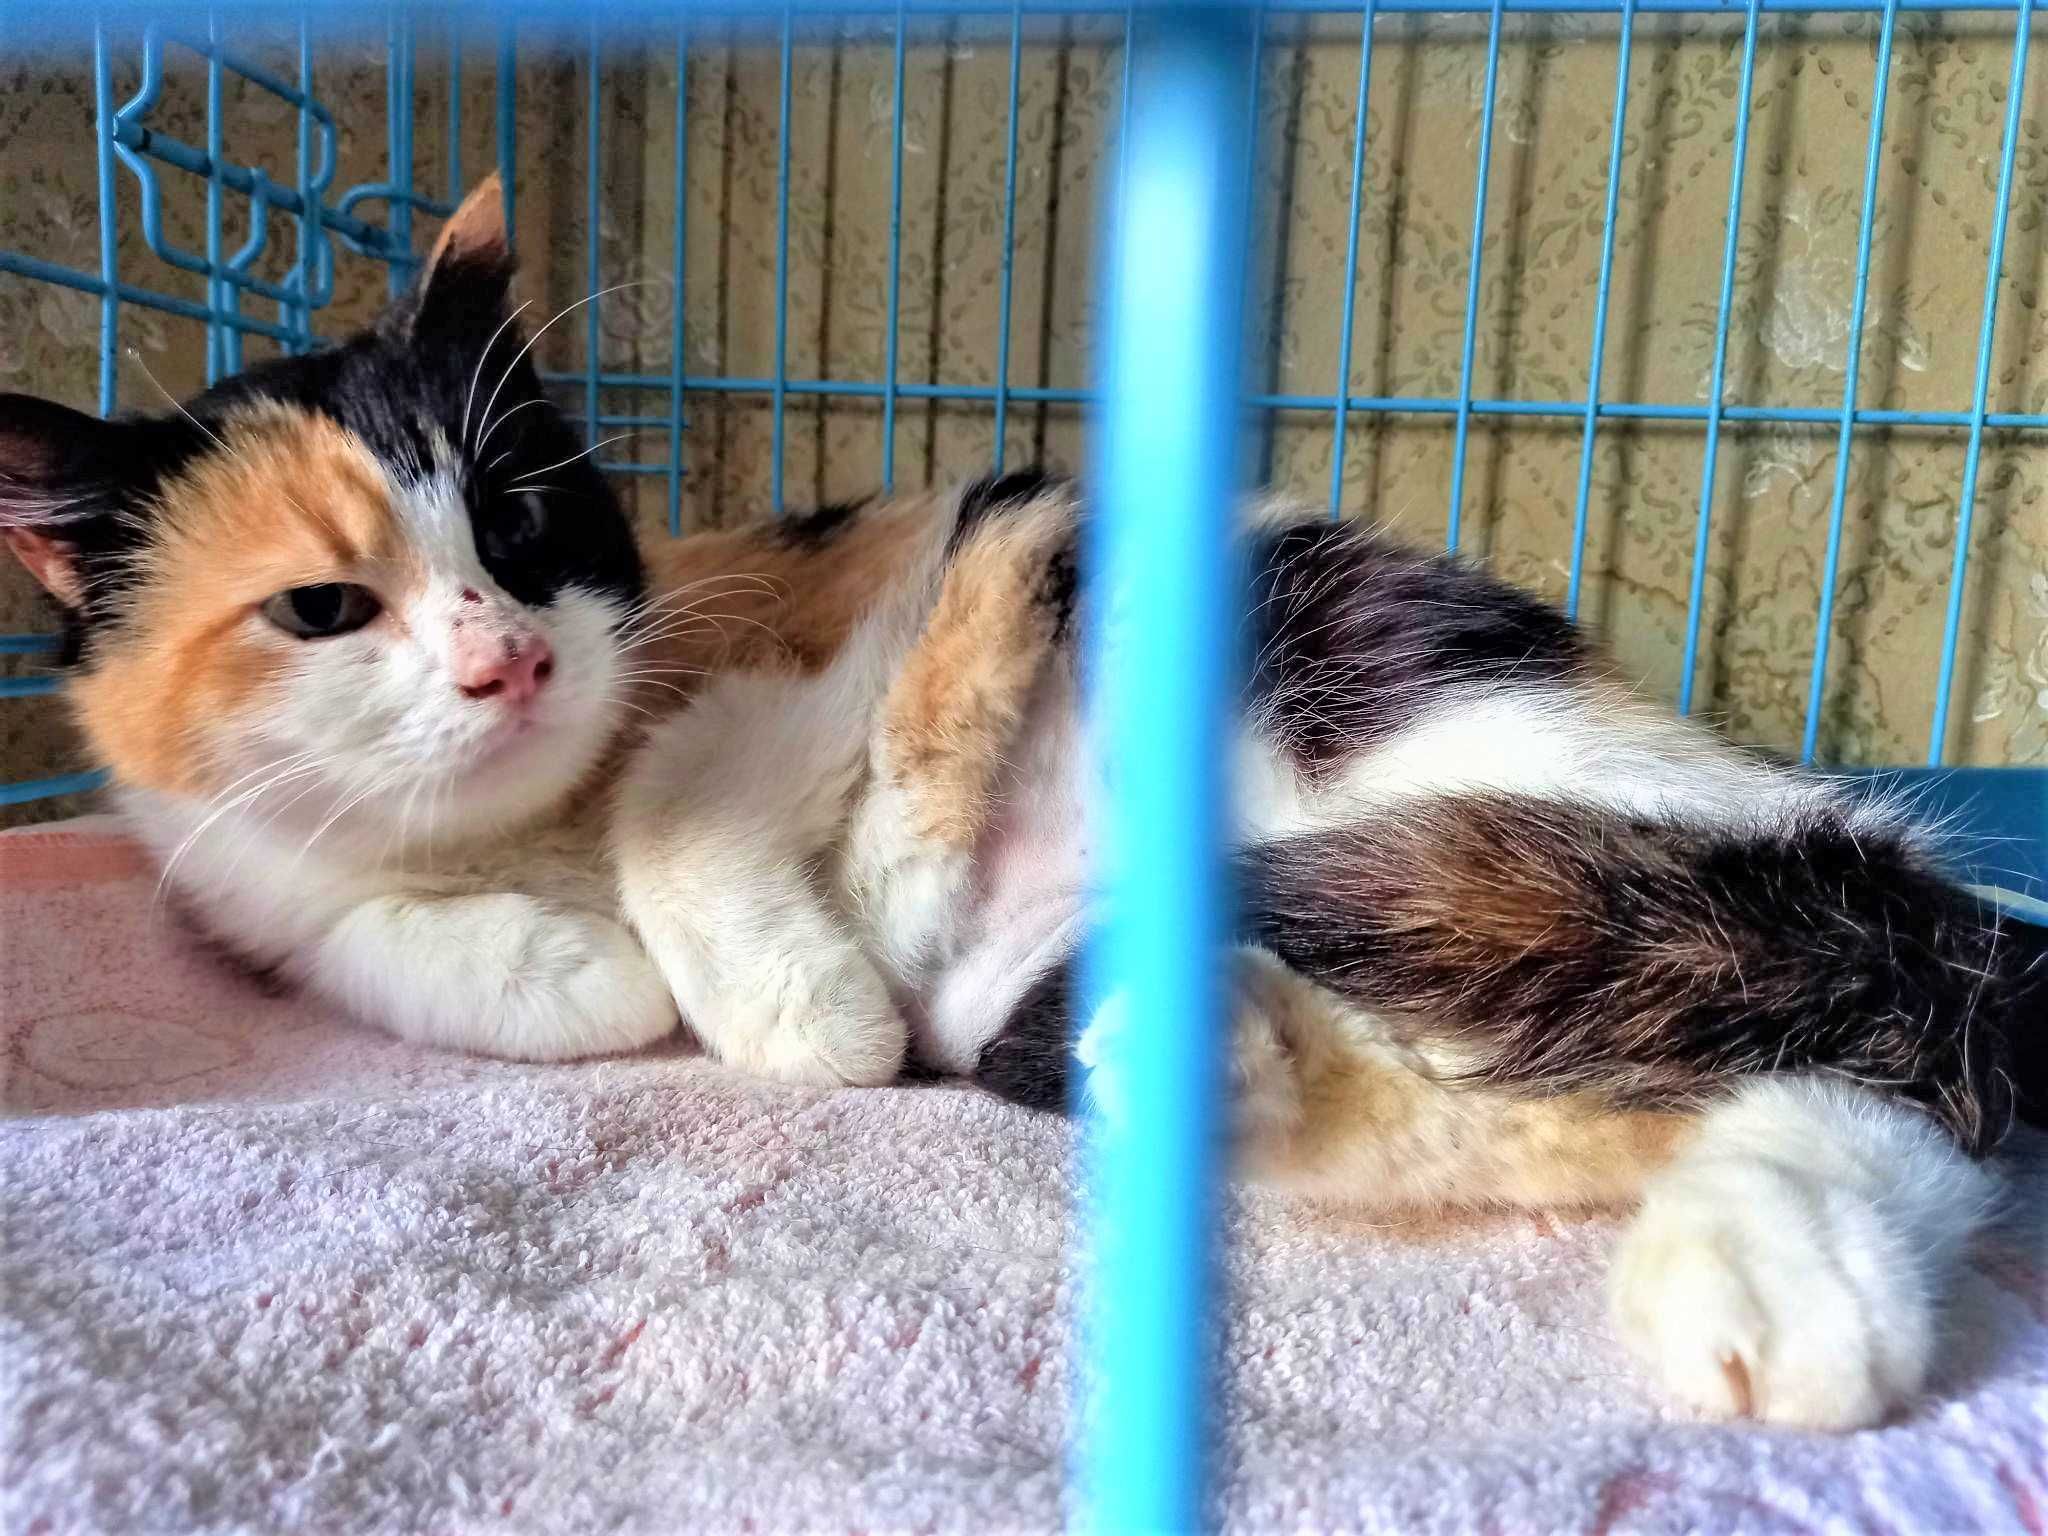 Afina piękna kotka trikolorka, o niezależnym charakterze